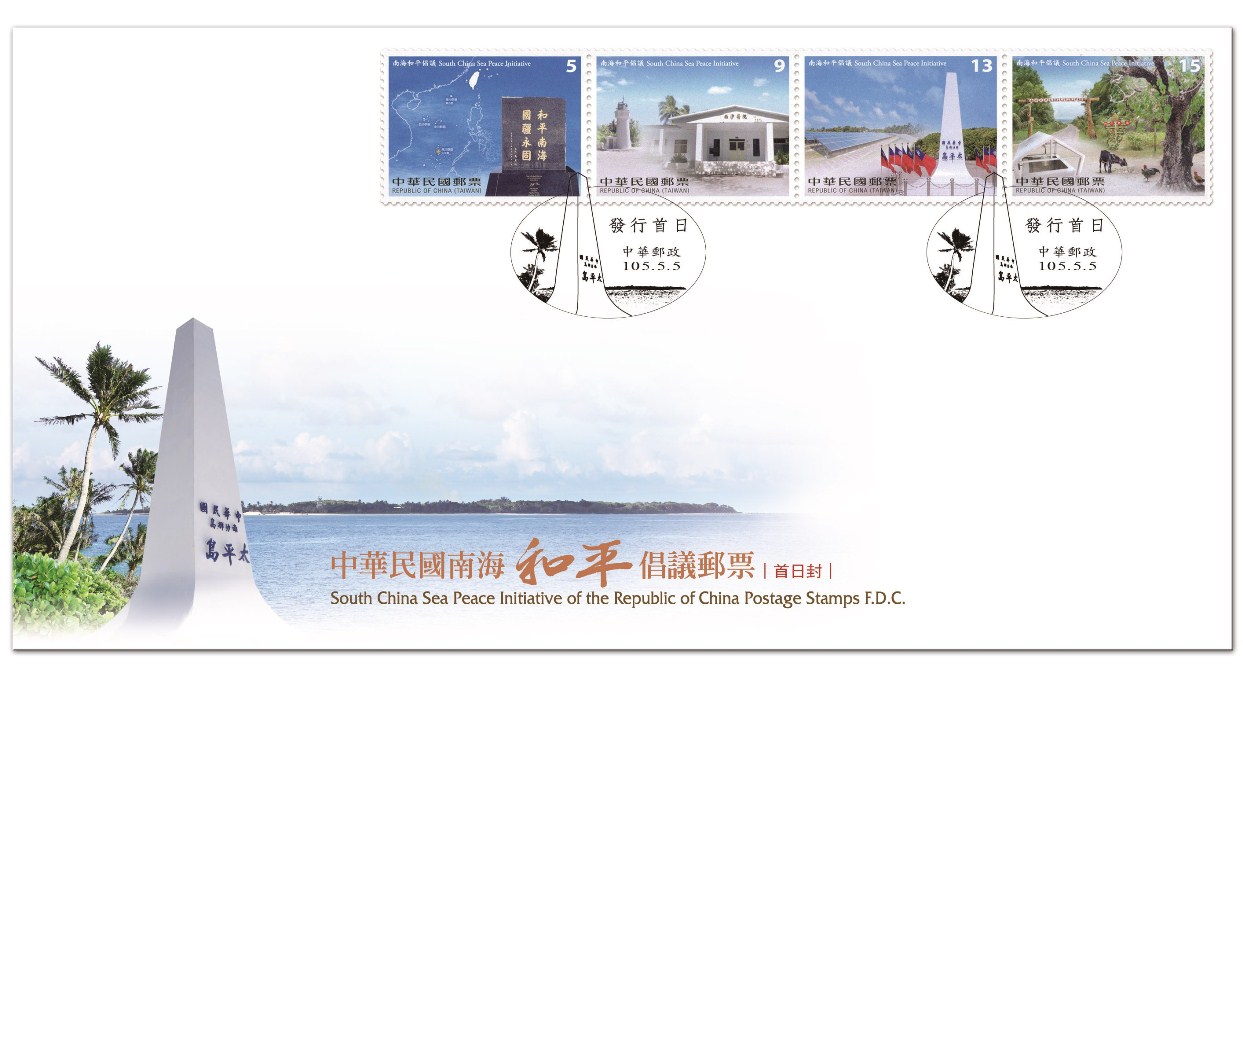 中華民國南海和平倡議郵票 中文預銷首日戳套票封